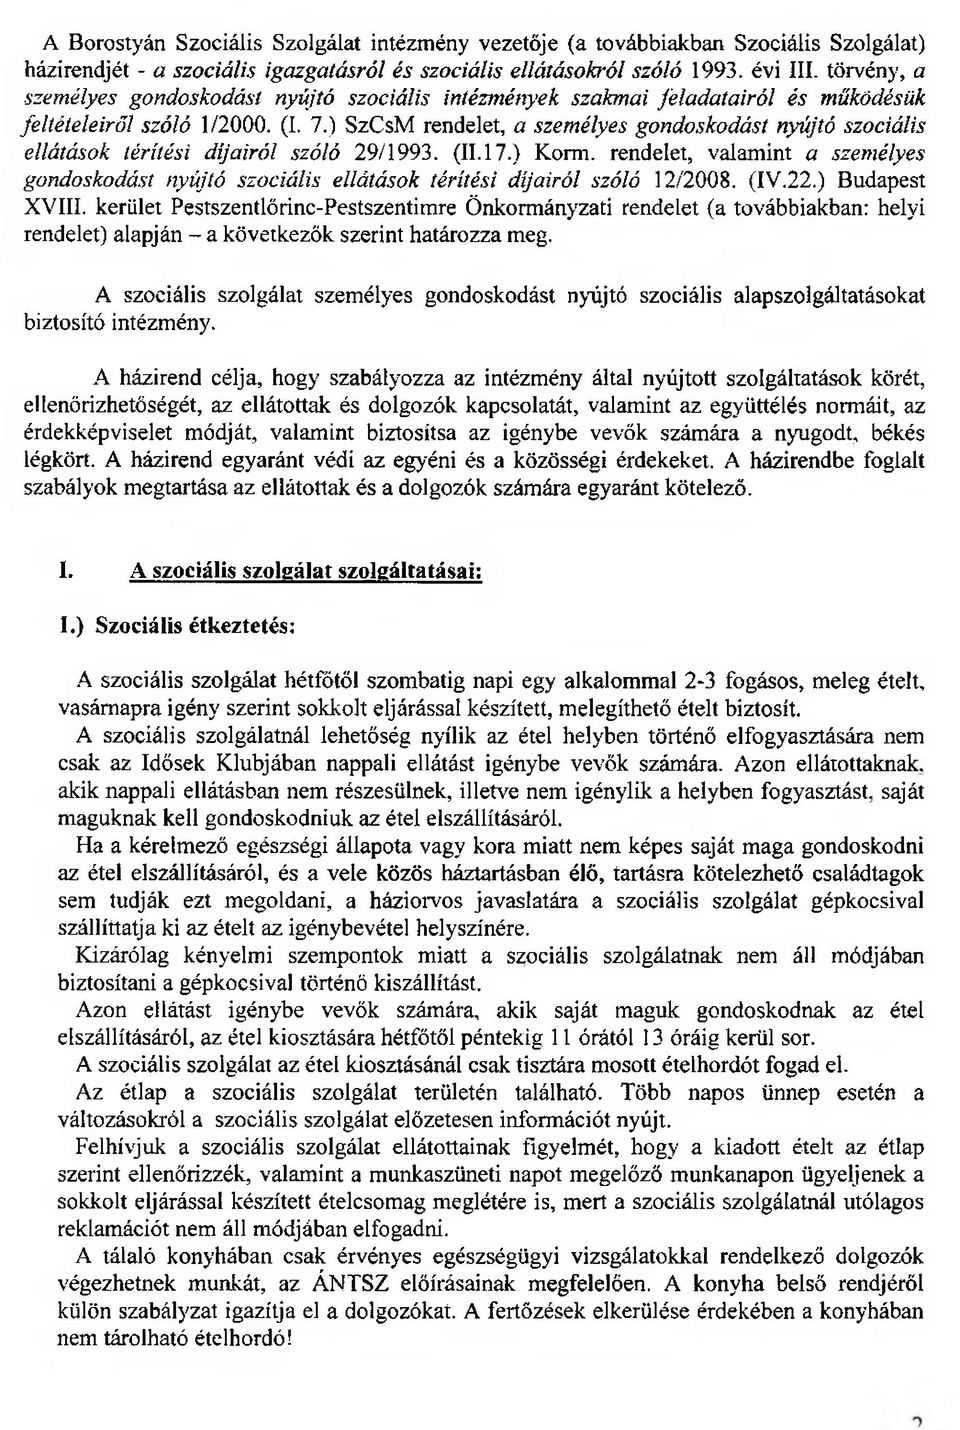 ) SzCsM rendelet, a személyes gondoskodást nyújtó szociális ellátások térítési díjairól szóló 29/1993. (11.17.) Korm.